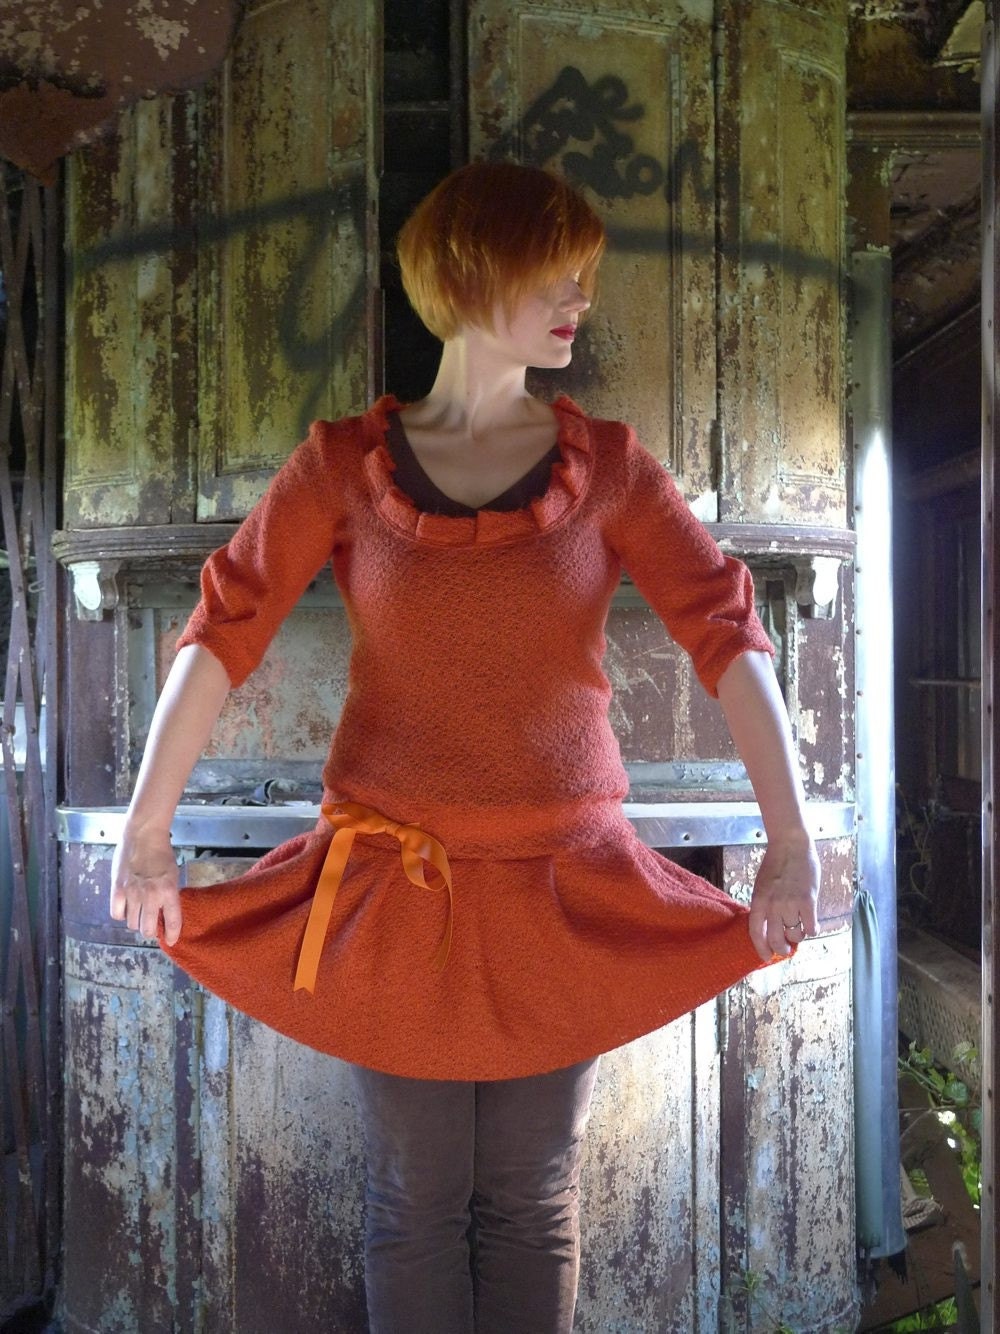 meerwiibli orange knit pleated dress size medium fits most - FREE SHIPPING - meerwiibli